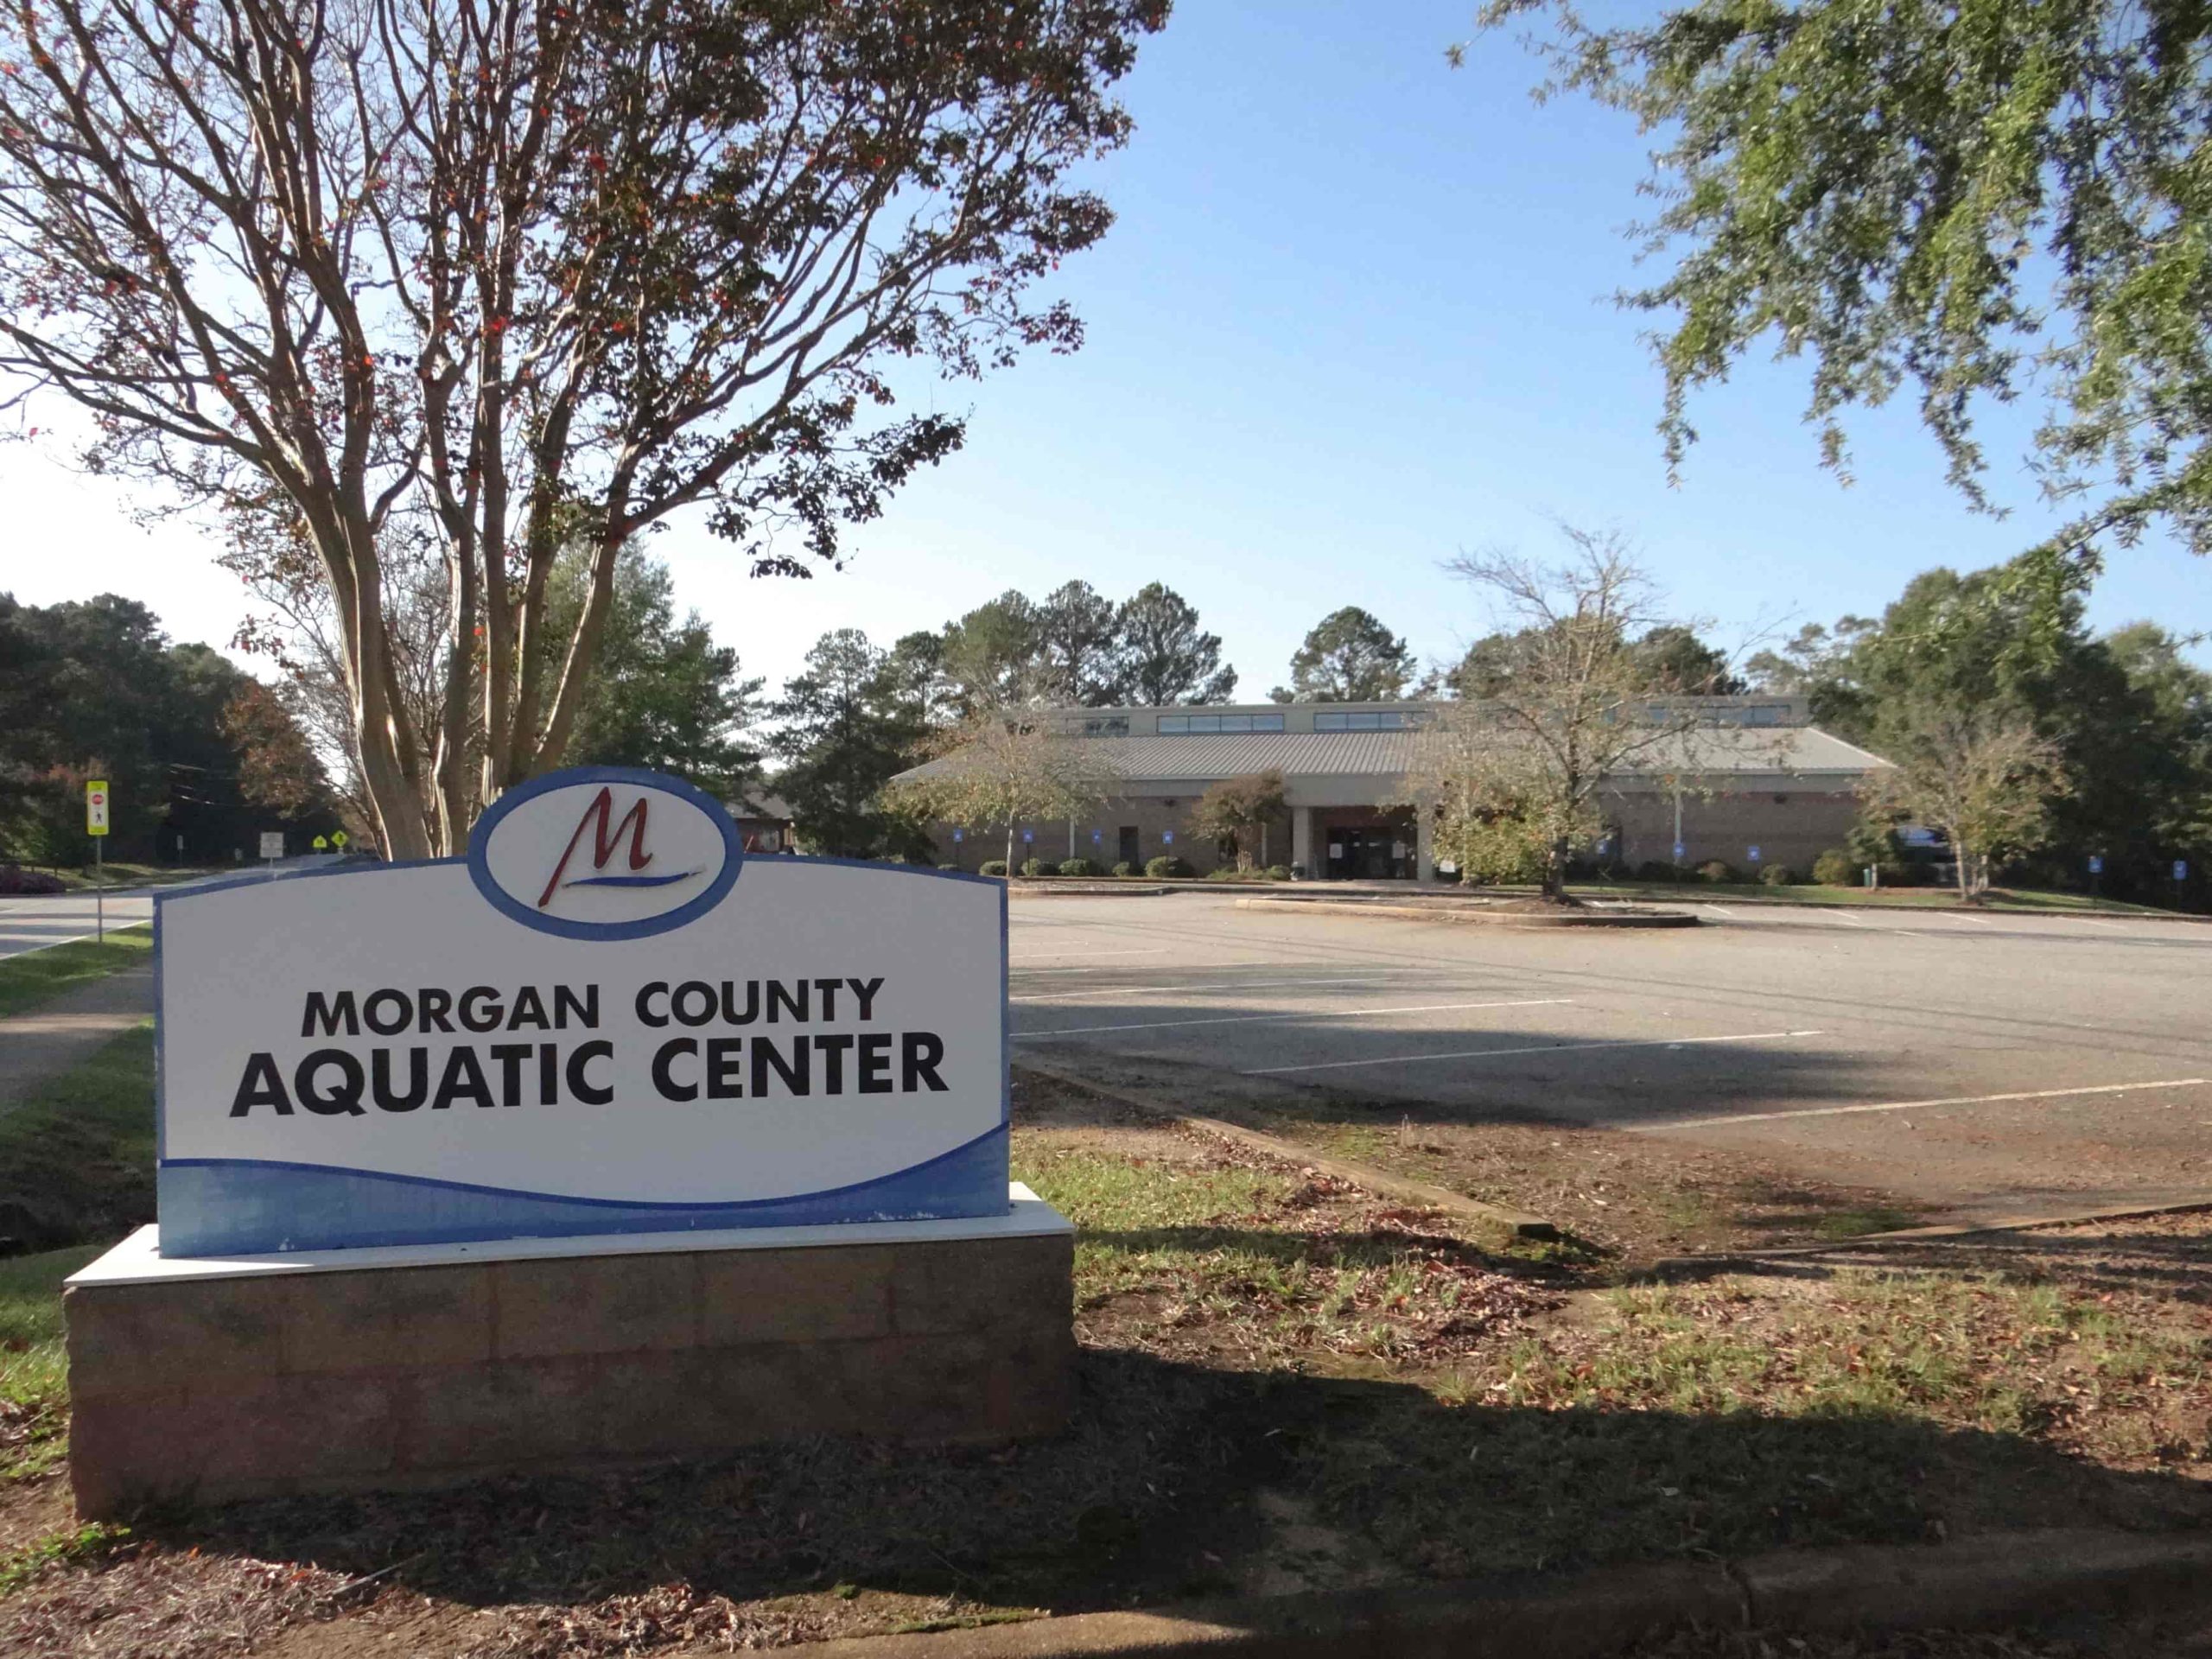 Morgan County Aquatic Center